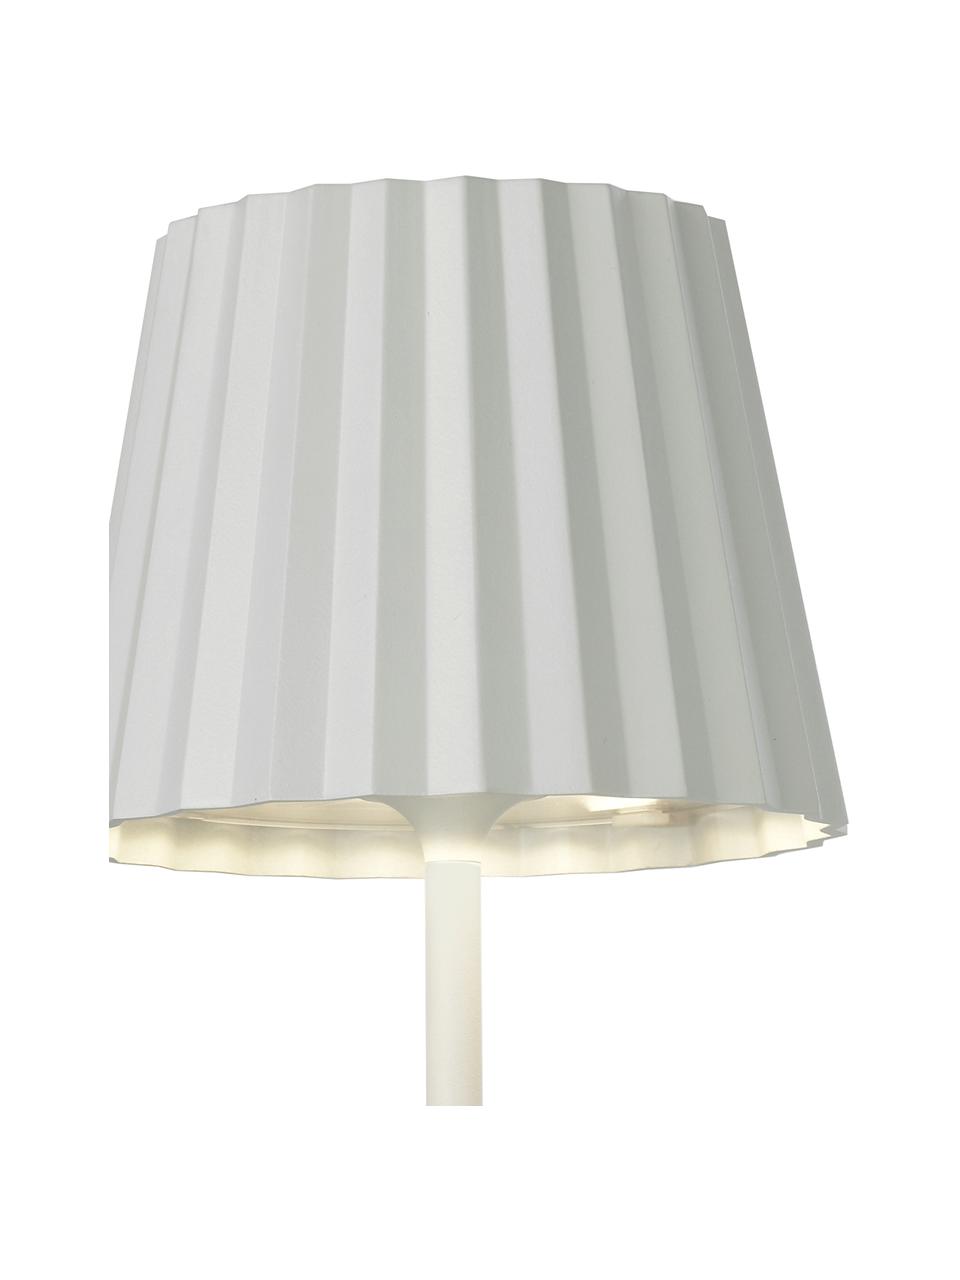 Mobilna lampa zewnętrzna LED z funkcją przyciemniania Trellia, Biały, Ø 15 x W 38 cm